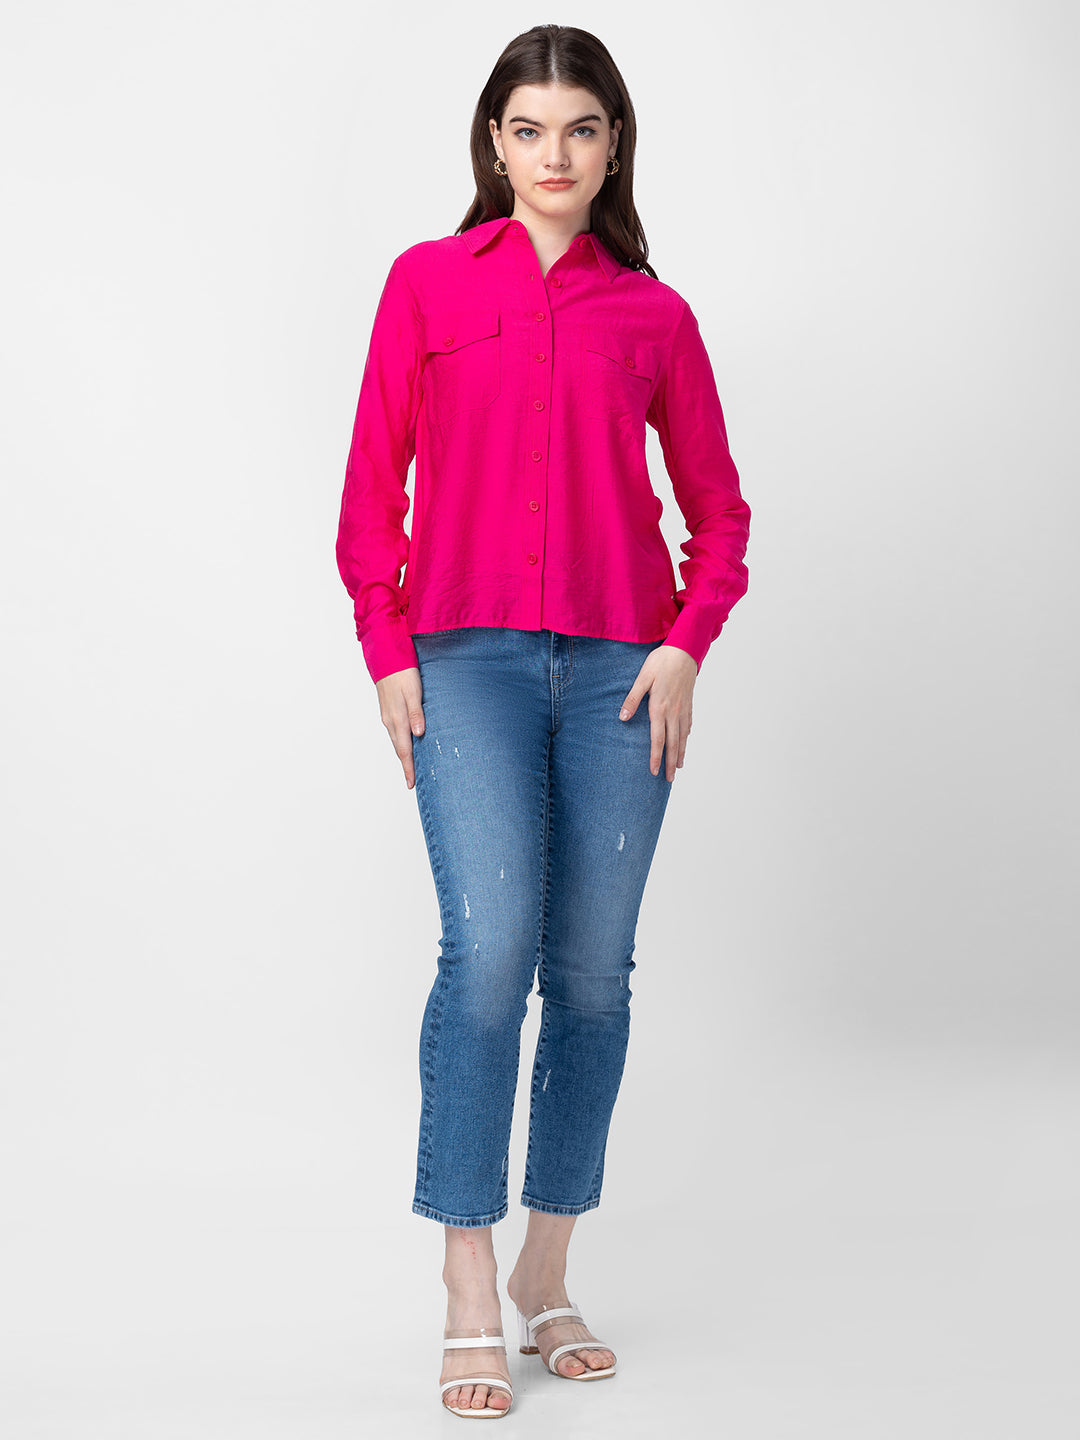 Spykar Women Fuschia Pink Cotton Regular Fit Plain Shirts